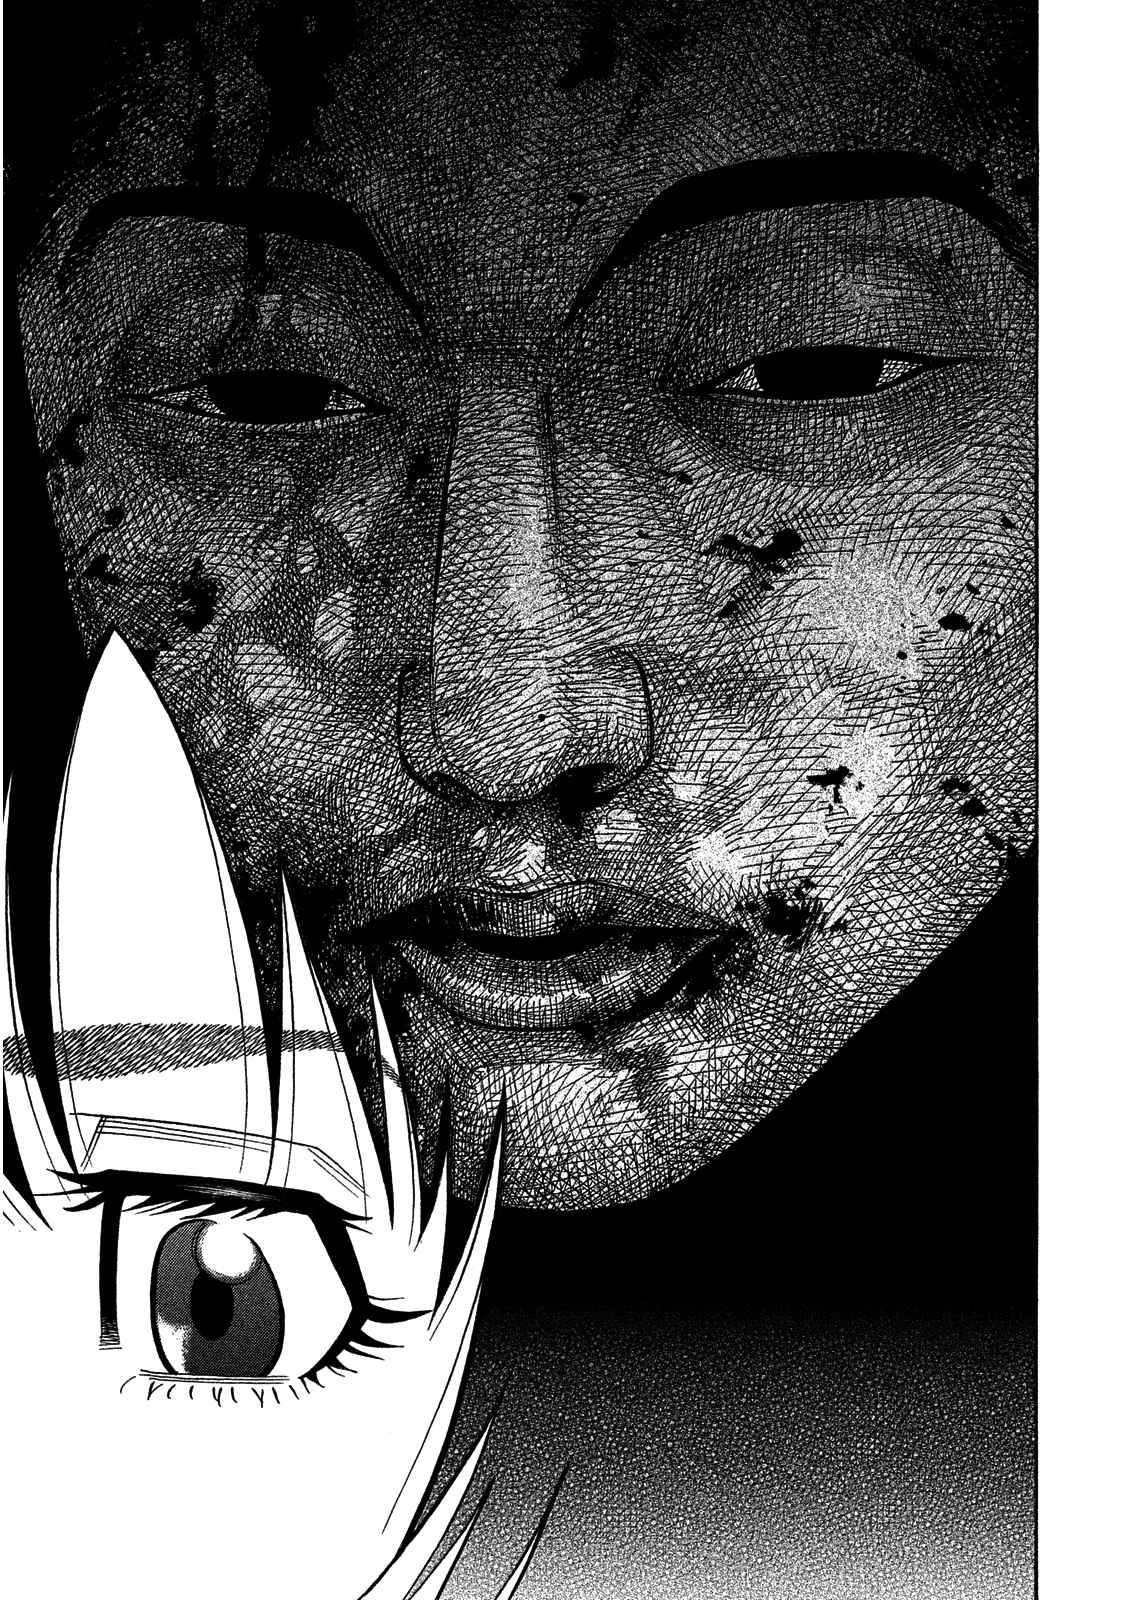 Kudan no Gotoshi Vol. 1 Ch. 6 Ayumi Baba < Part 3 >